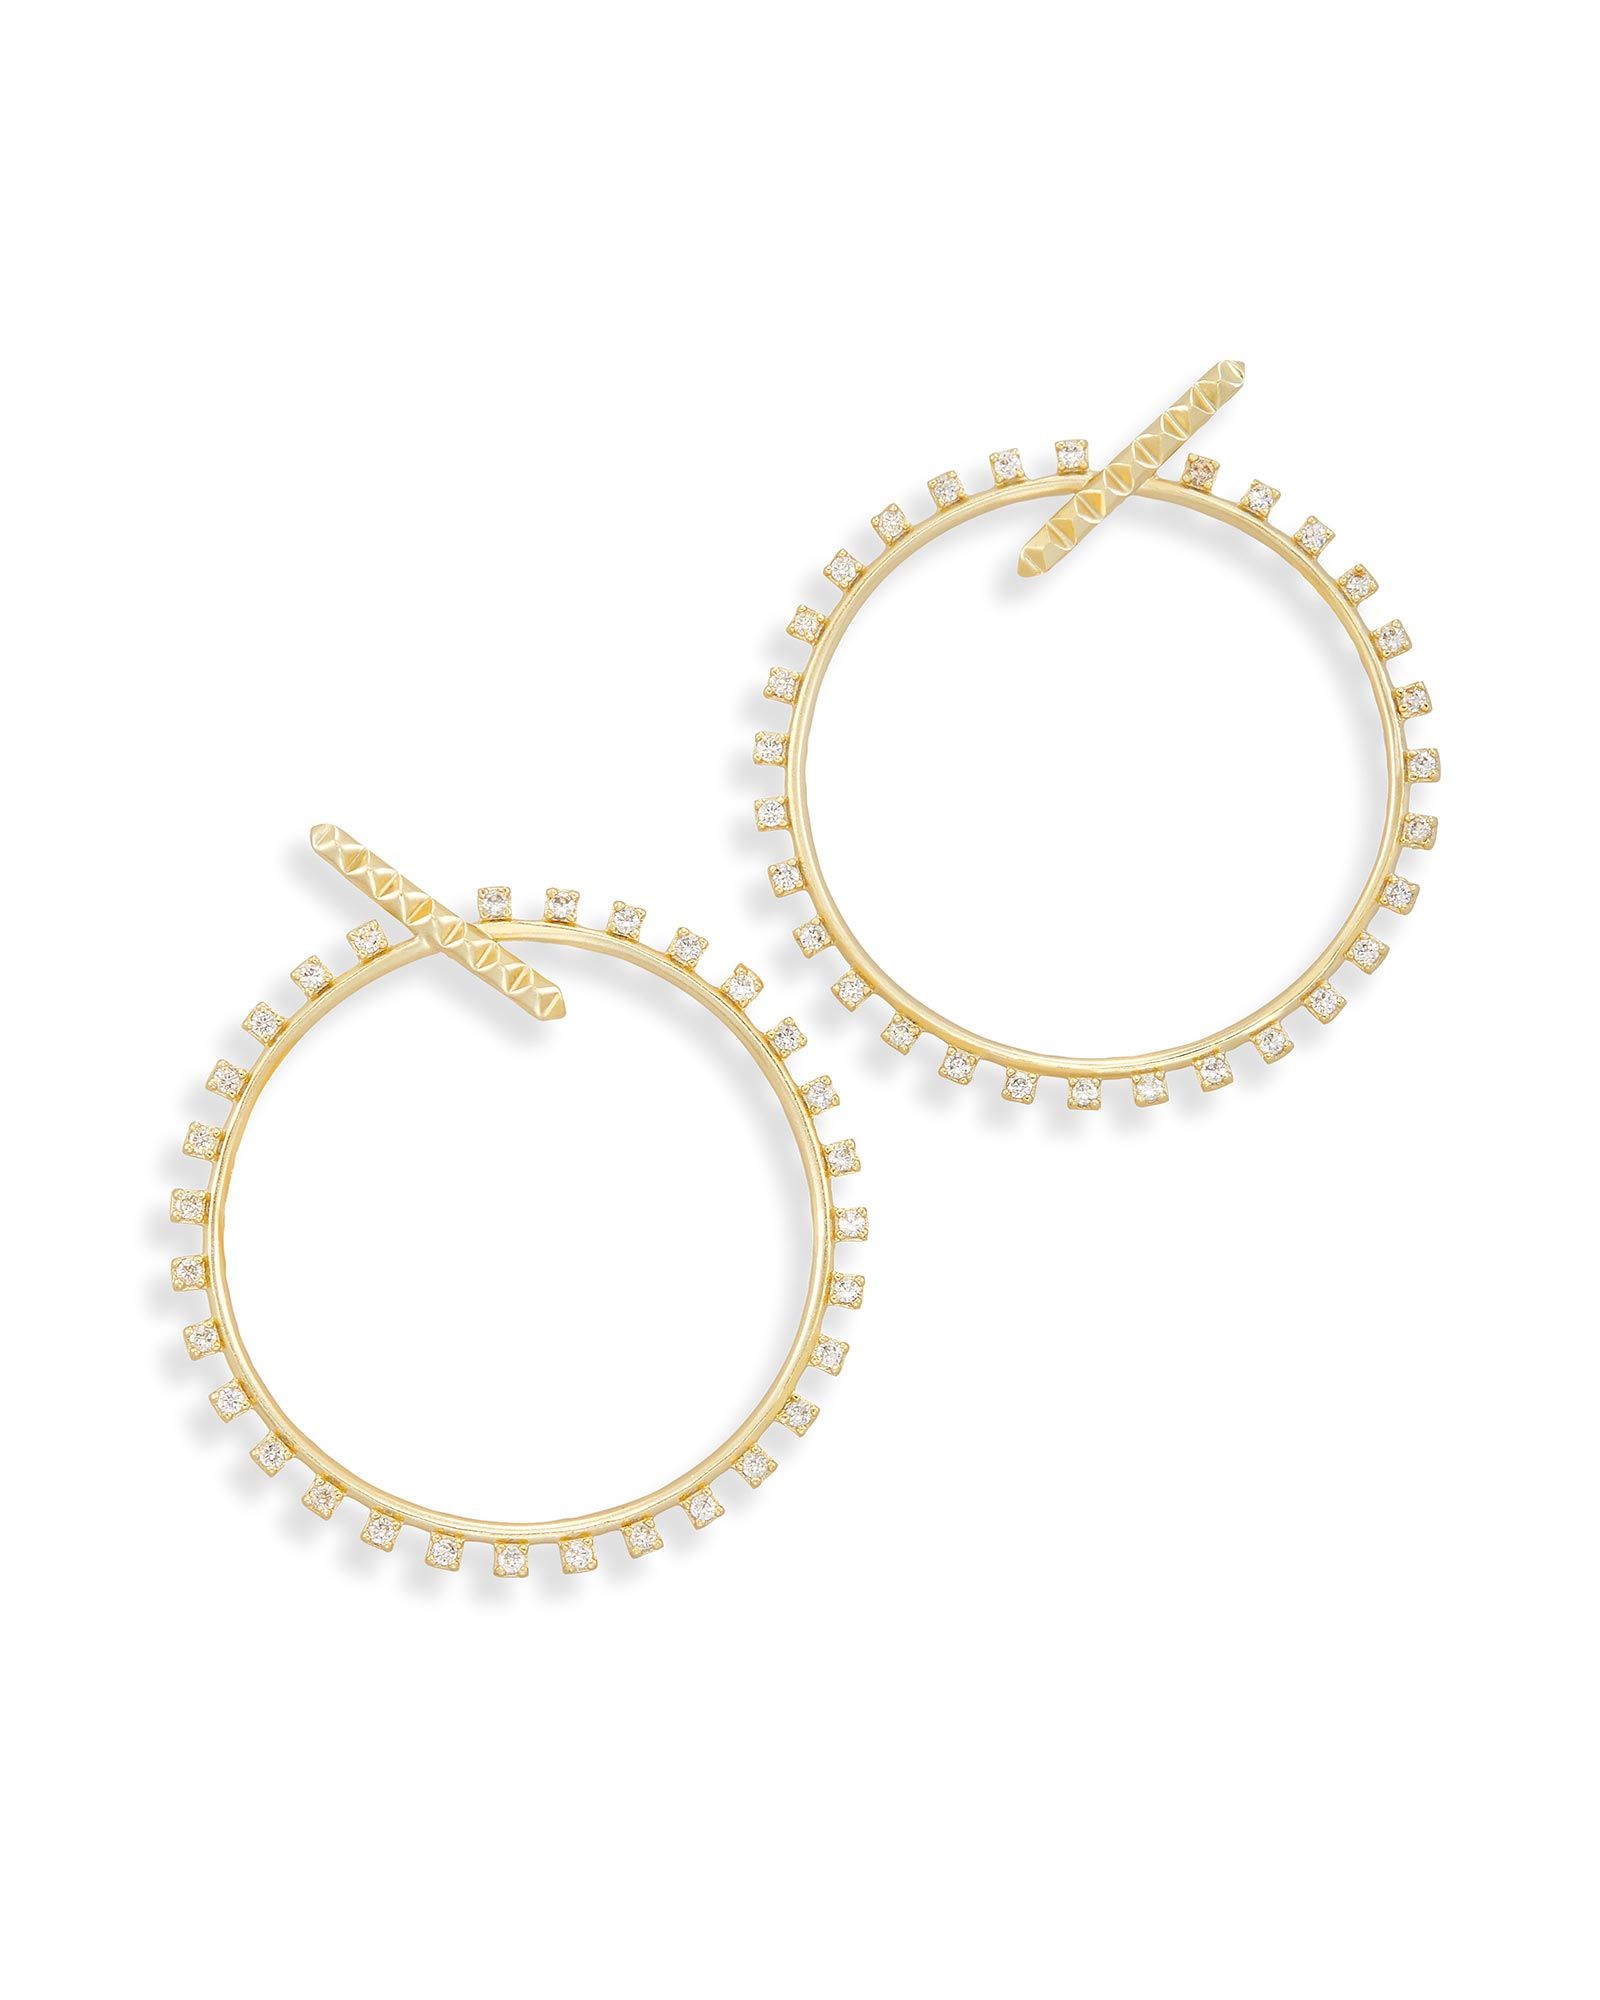 Charlie Grace Hoop Earrings in Gold | Kendra Scott